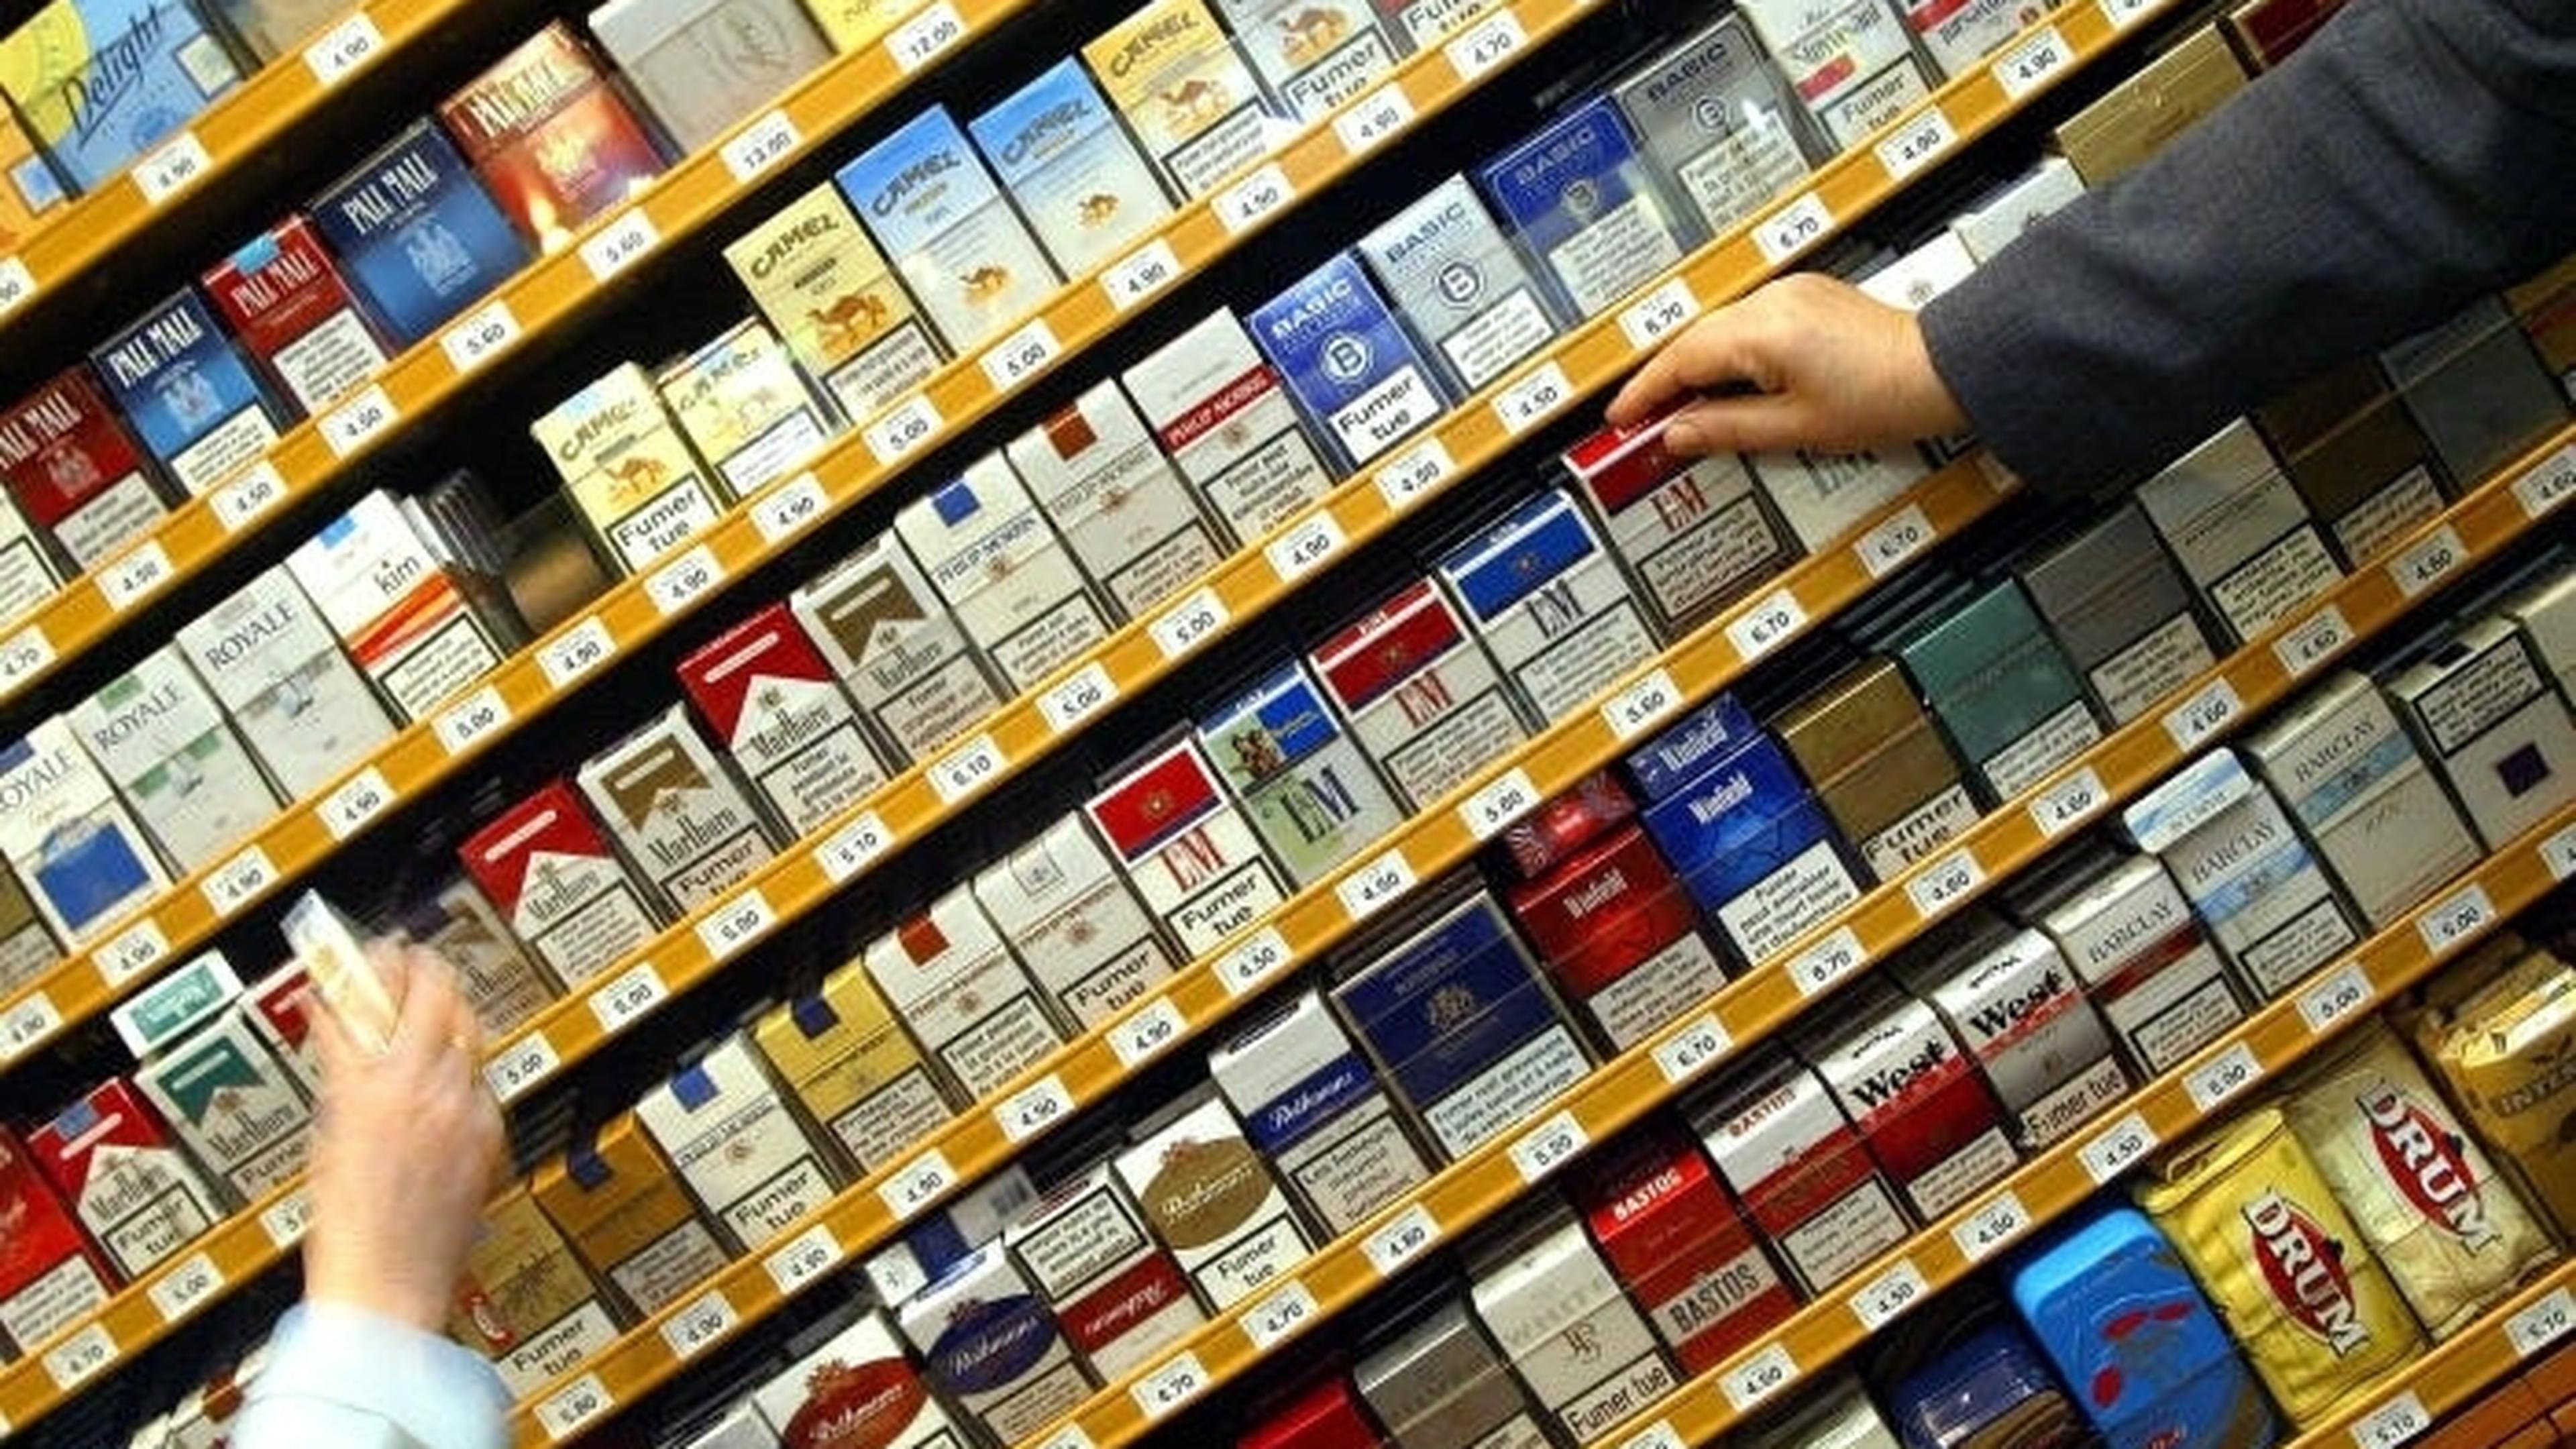 Альтернативная табачная продукция это. Сигареты ассортимент. Марки сигарет. Выкладка сигарет. Марки импортных сигарет.